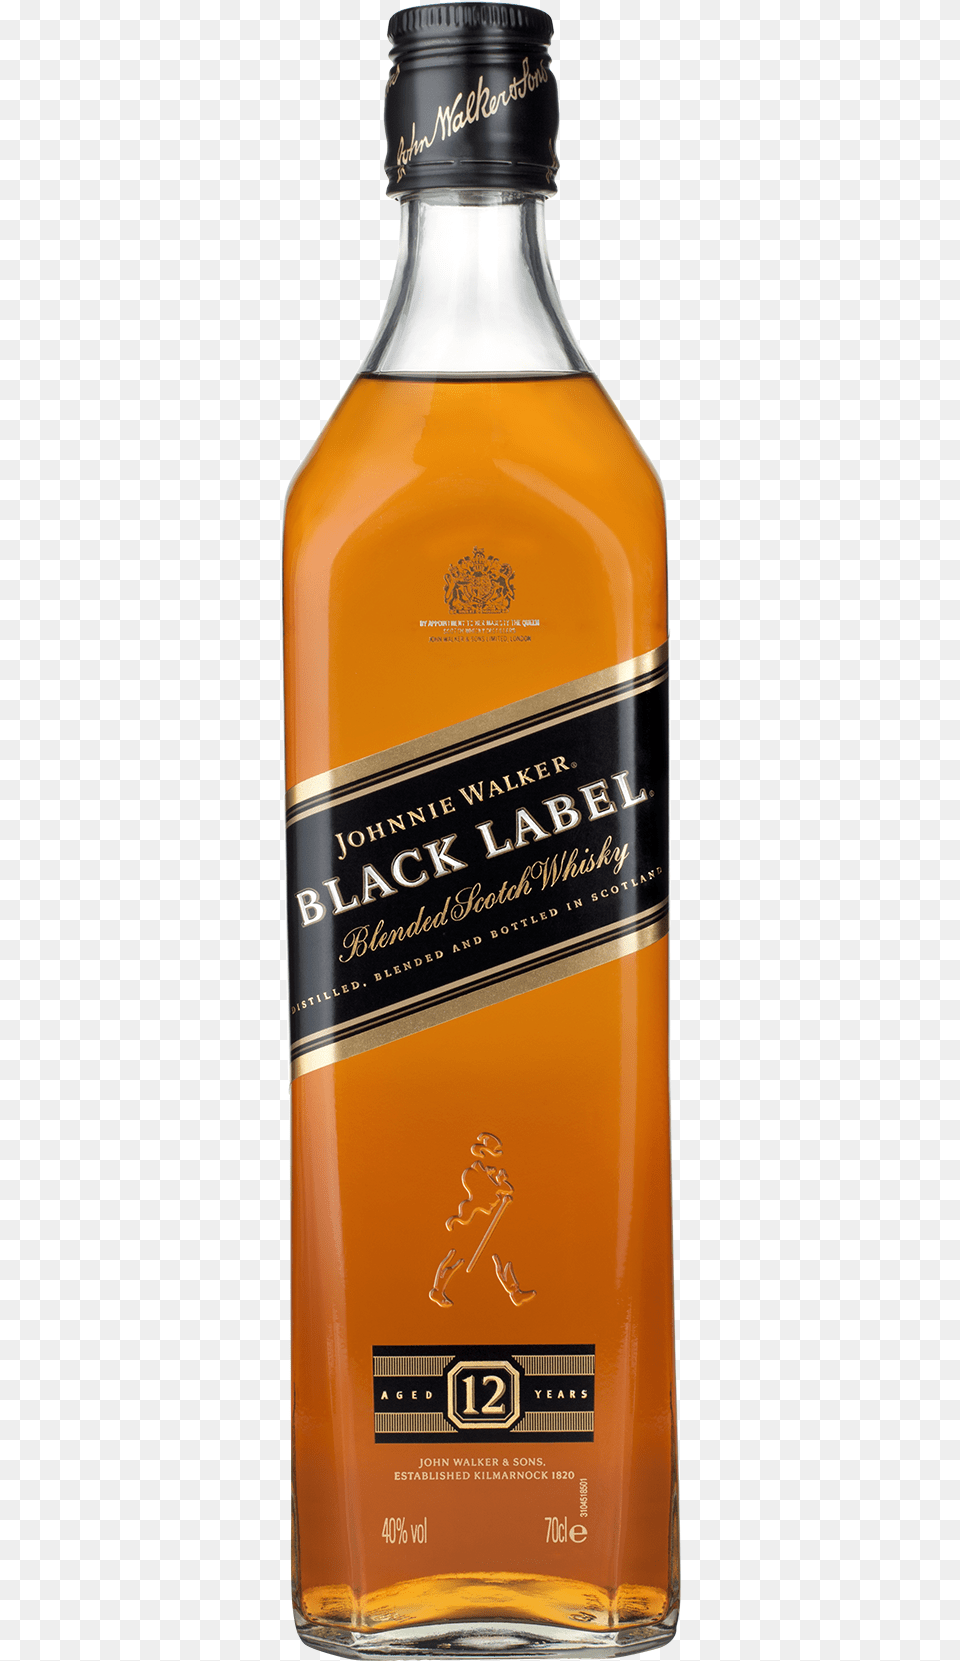 Black Label, Alcohol, Beverage, Liquor, Whisky Png Image